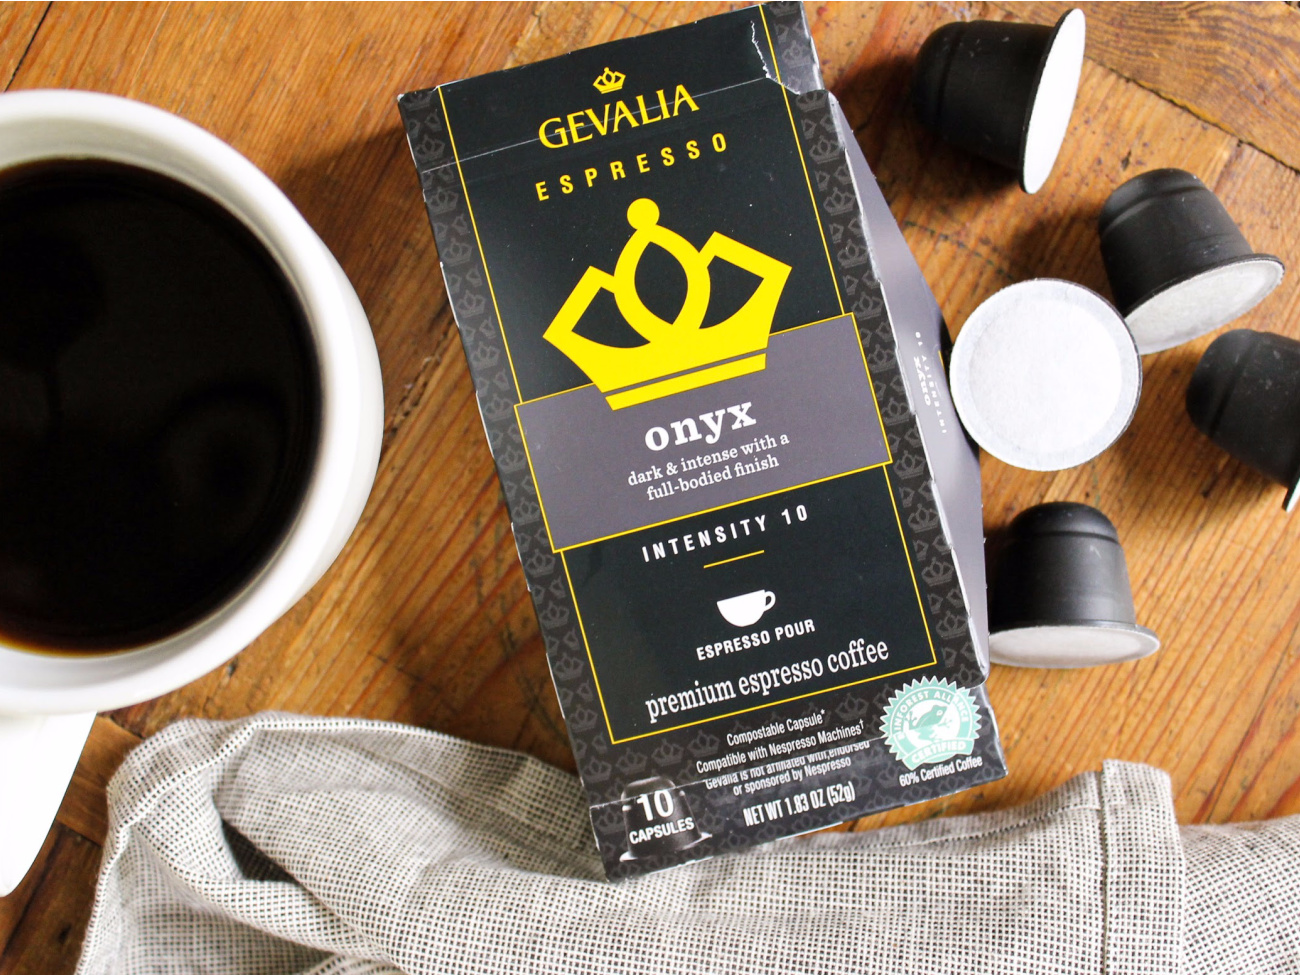 Gevalia Espresso Coffee Just $3.90 At Publix on I Heart Publix 1